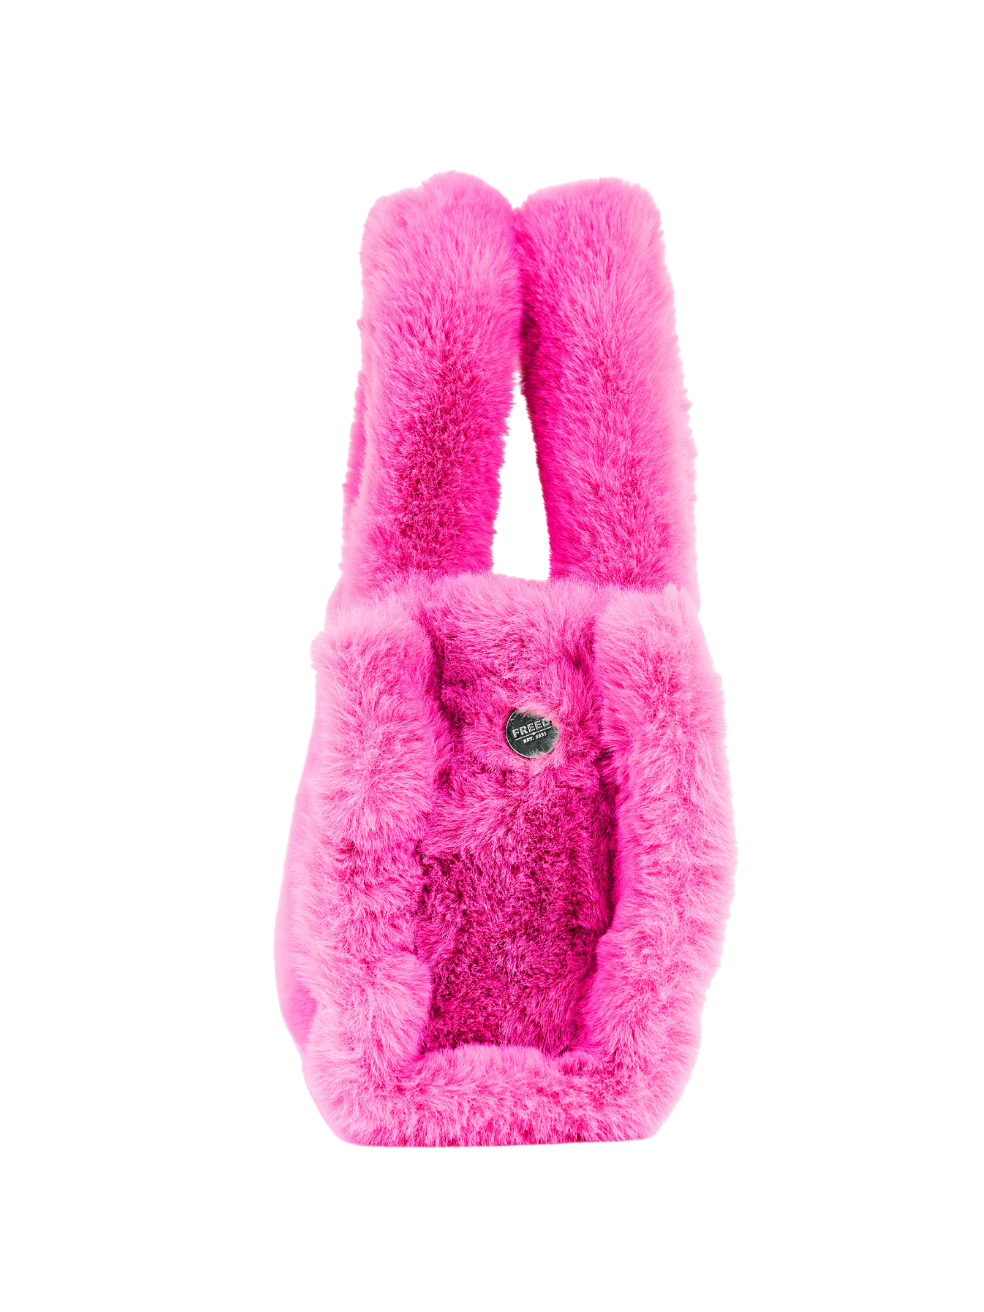 Small Mini Tote Bag Luxury Canada Accessories Bright Pink Fashion Purse Faux Fur